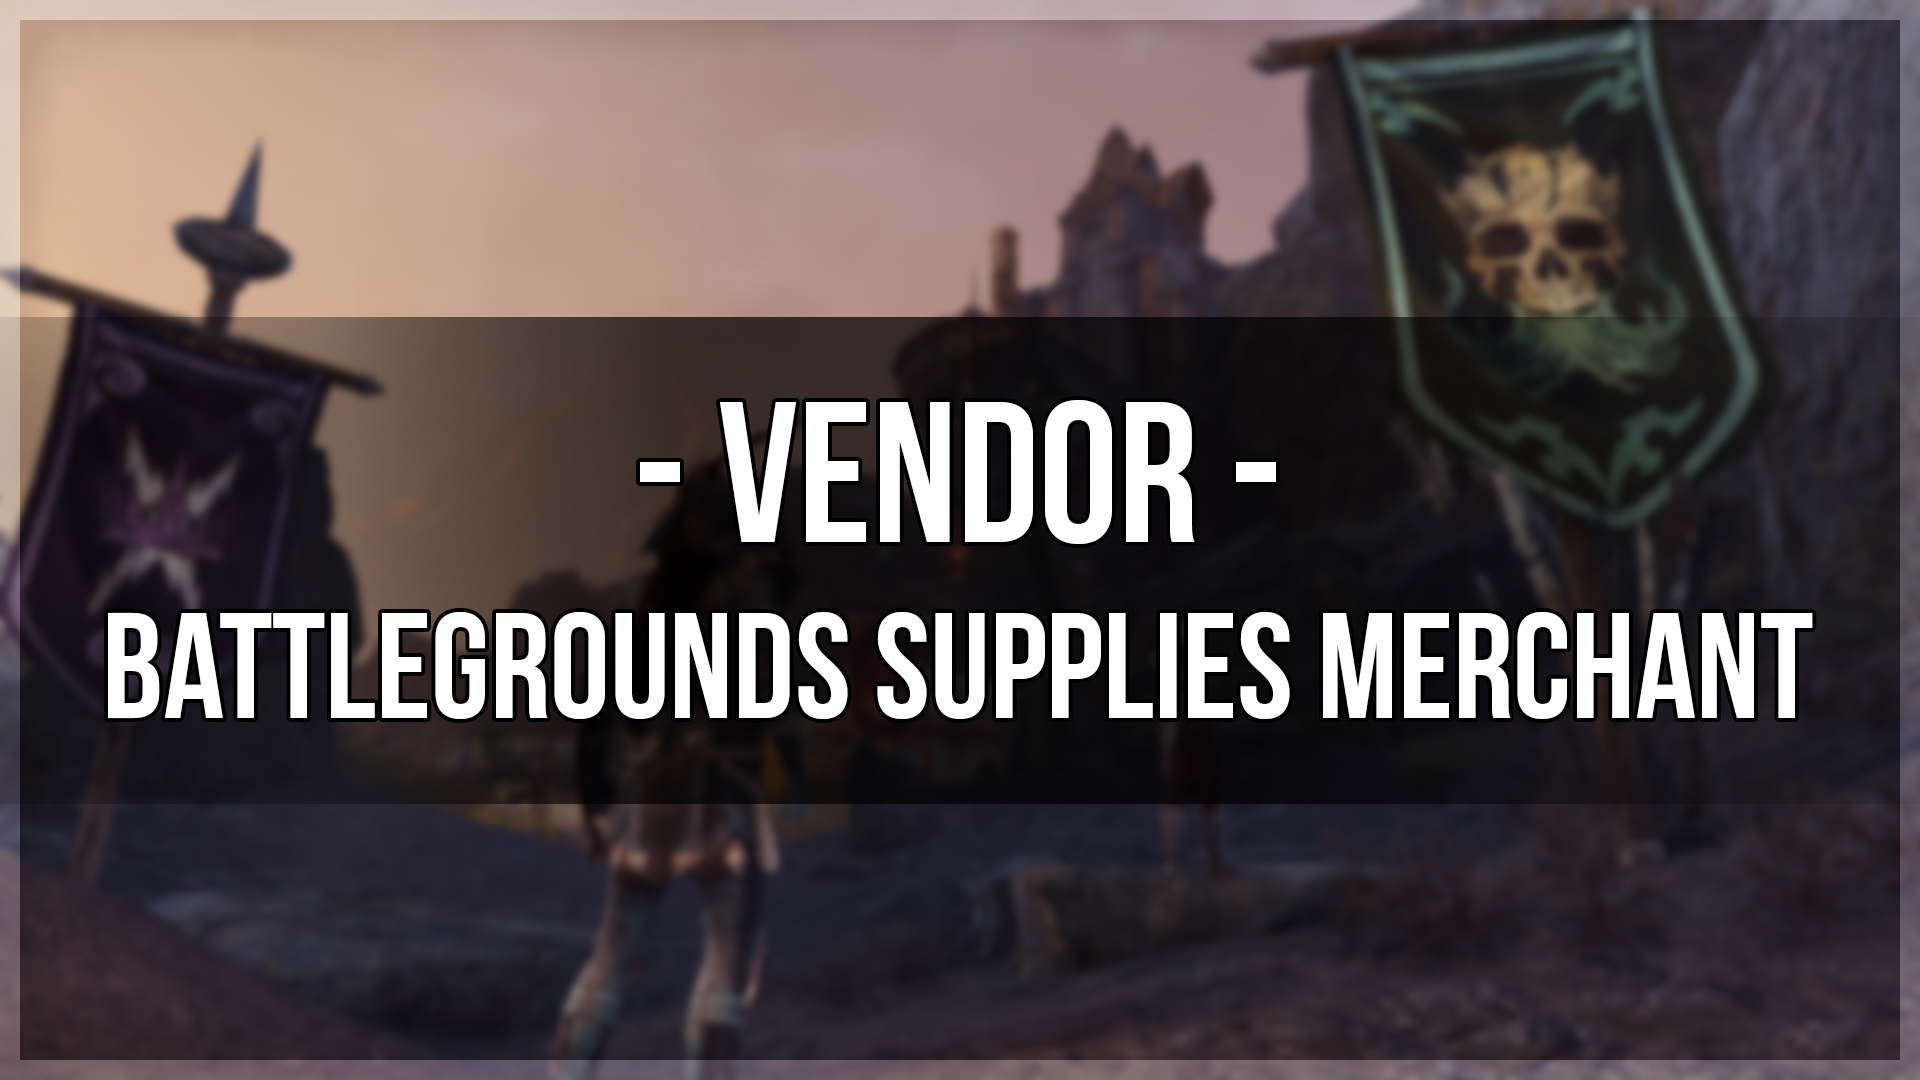 Battlegrounds Supplies Merchant